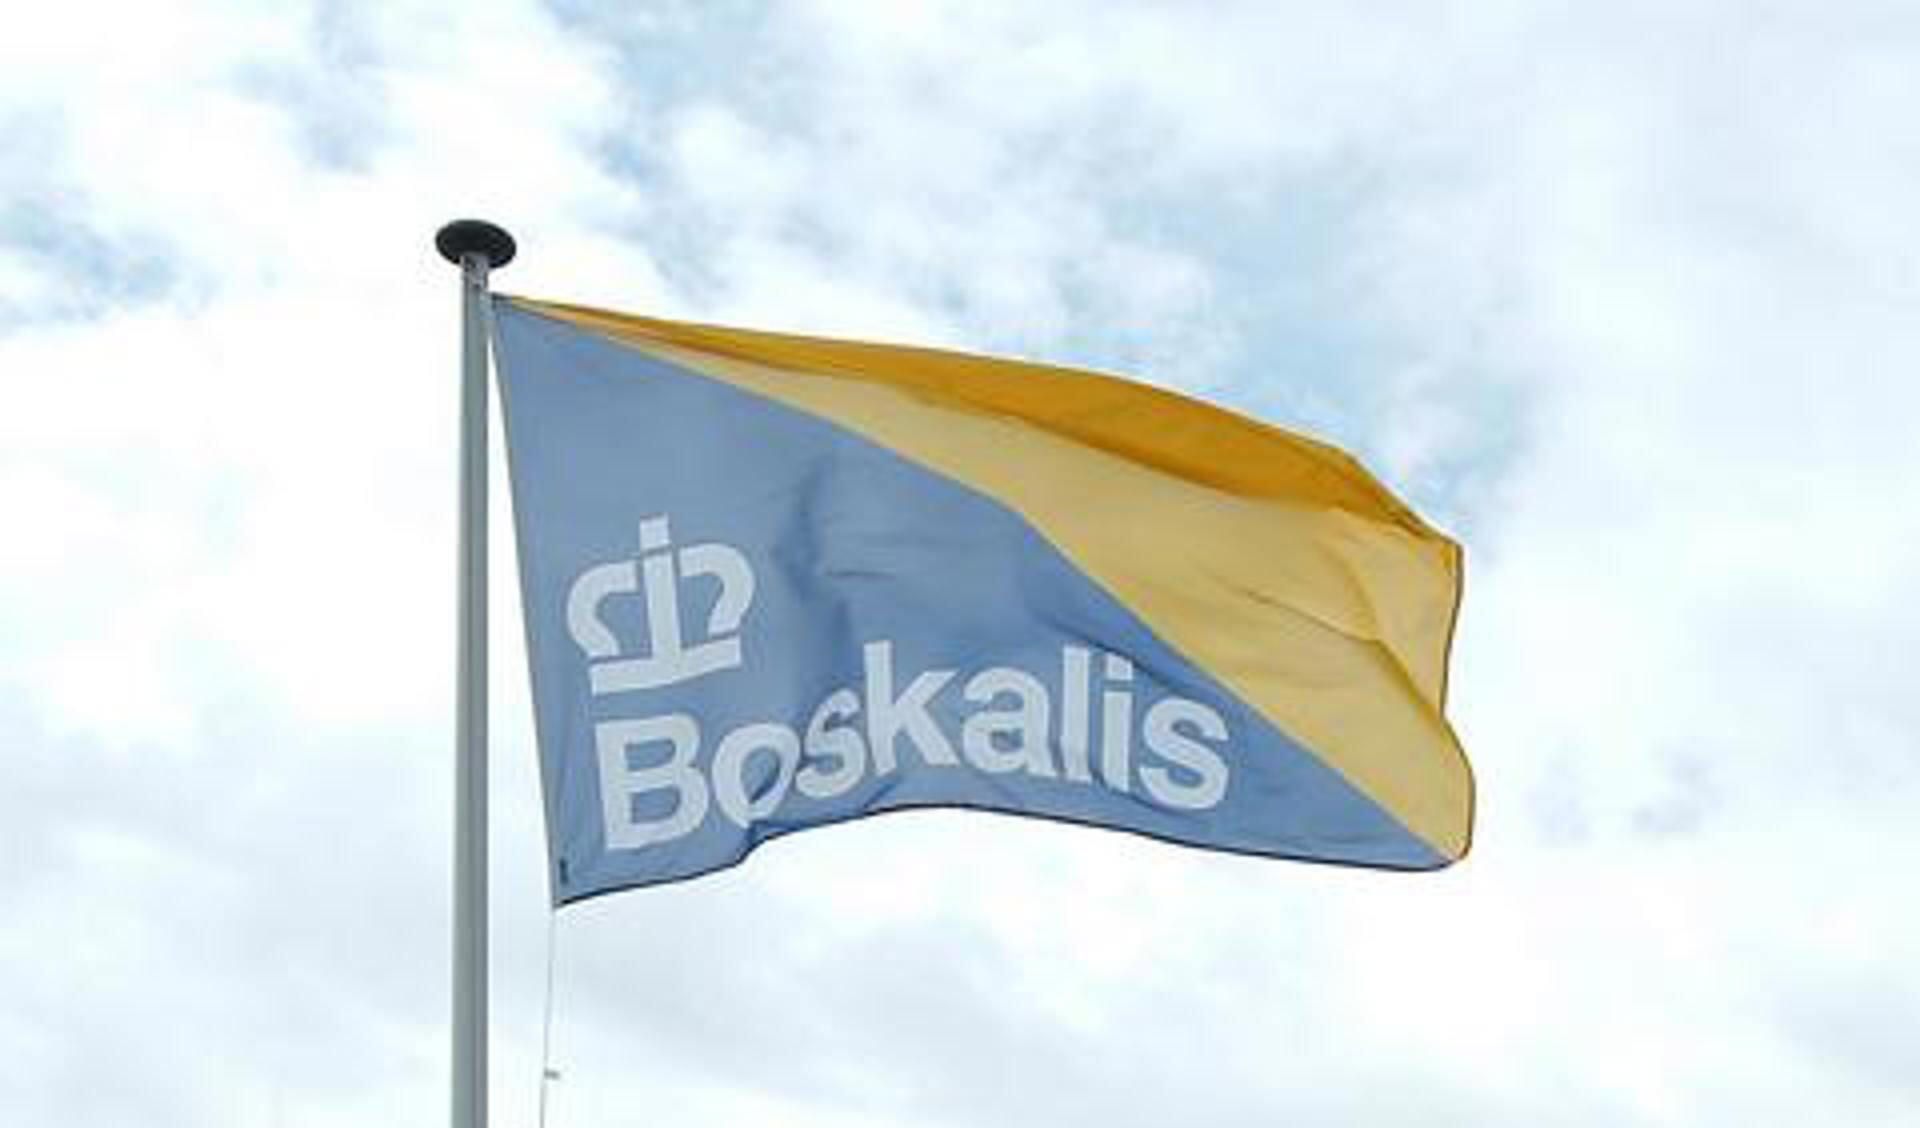 Boskalis is van oorsprong een Papendrechts bedrijf en is een van de grootste baggermaatschappijen.